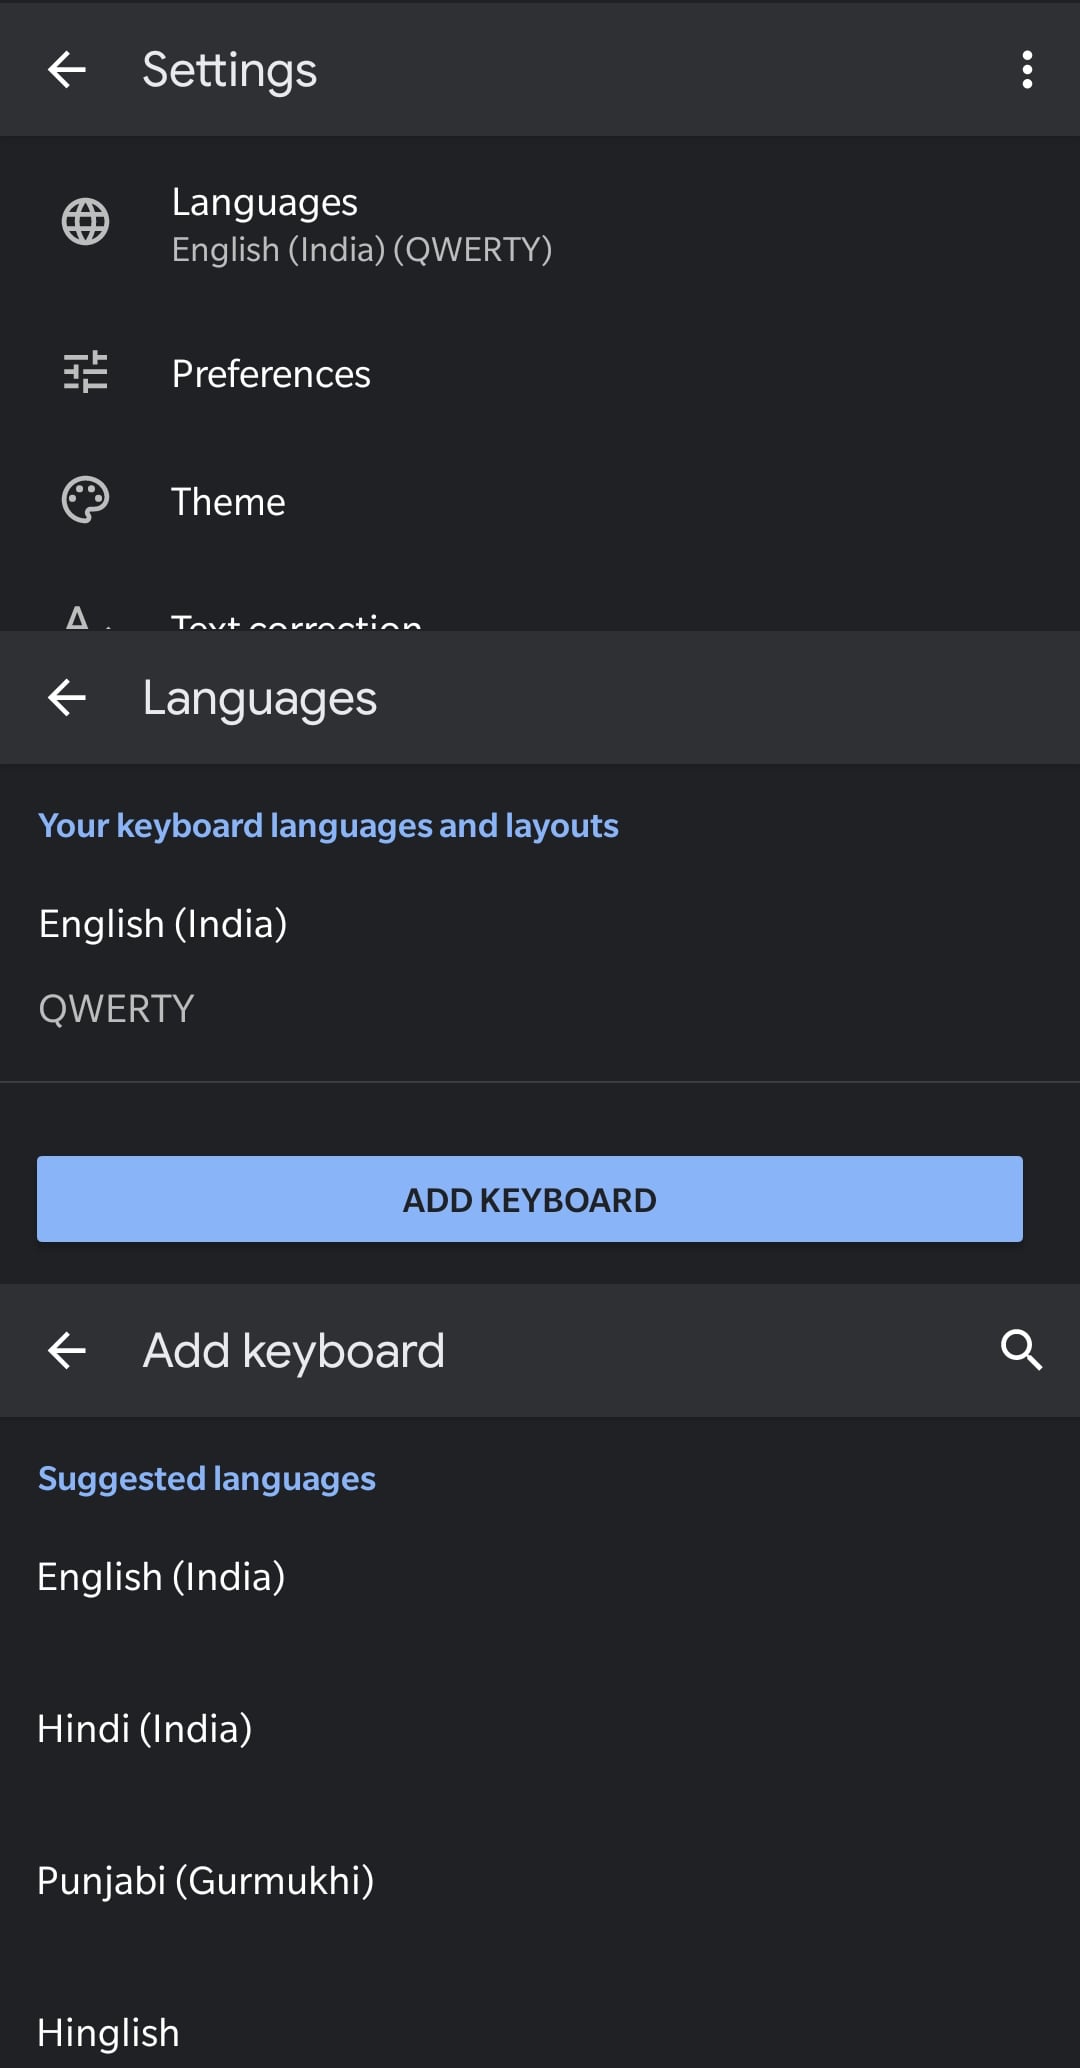 Adding a Hindi keyboard